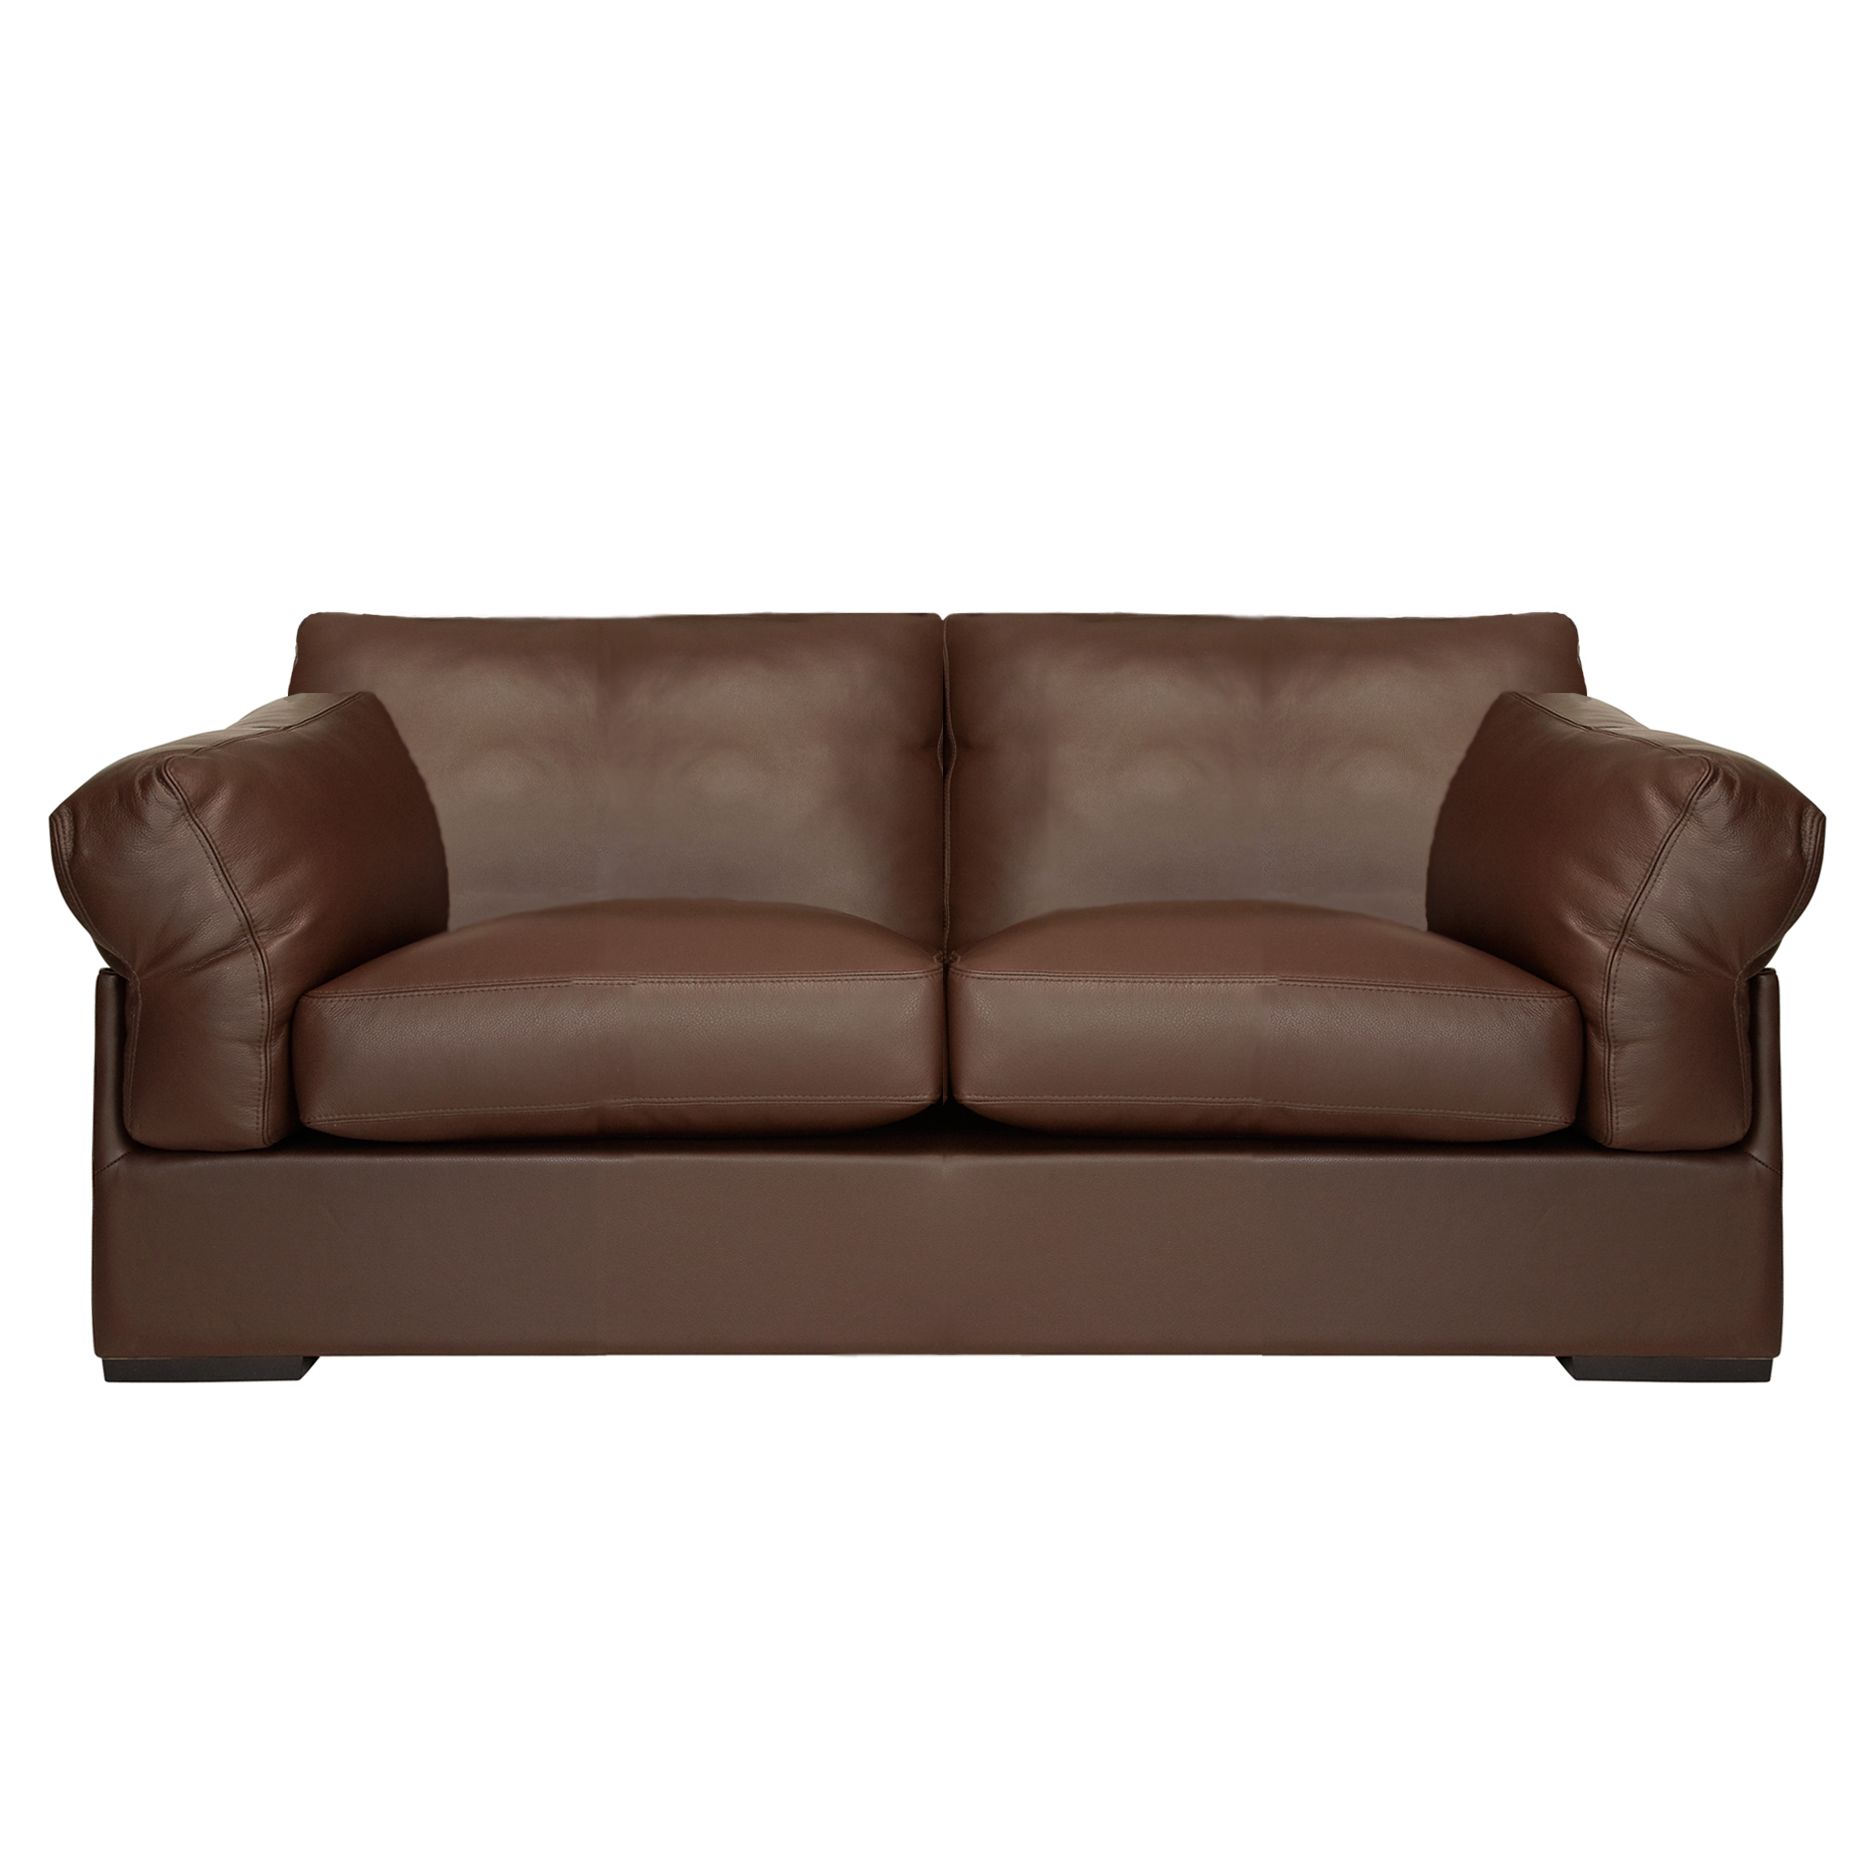 John Lewis Java Medium Sofa, Nature Brown, width 185cm